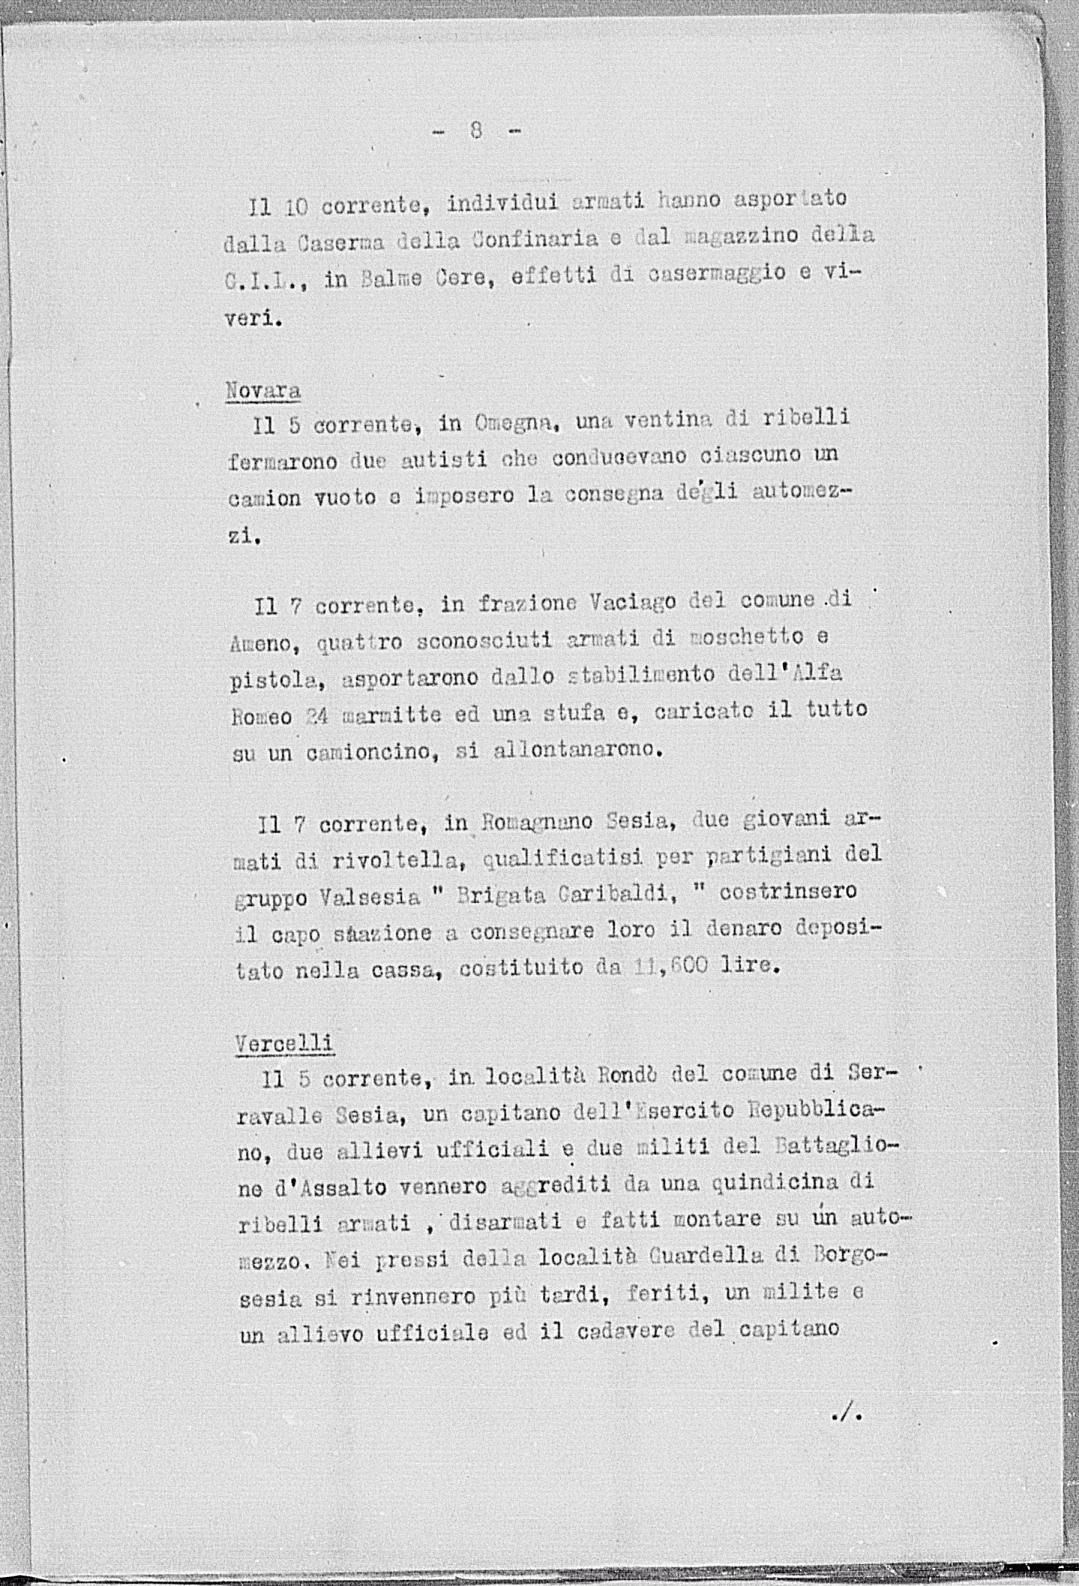 Notizia tratta dal Notiziario della Guardia Nazionale Repubblicana del giorno 19-01-1944